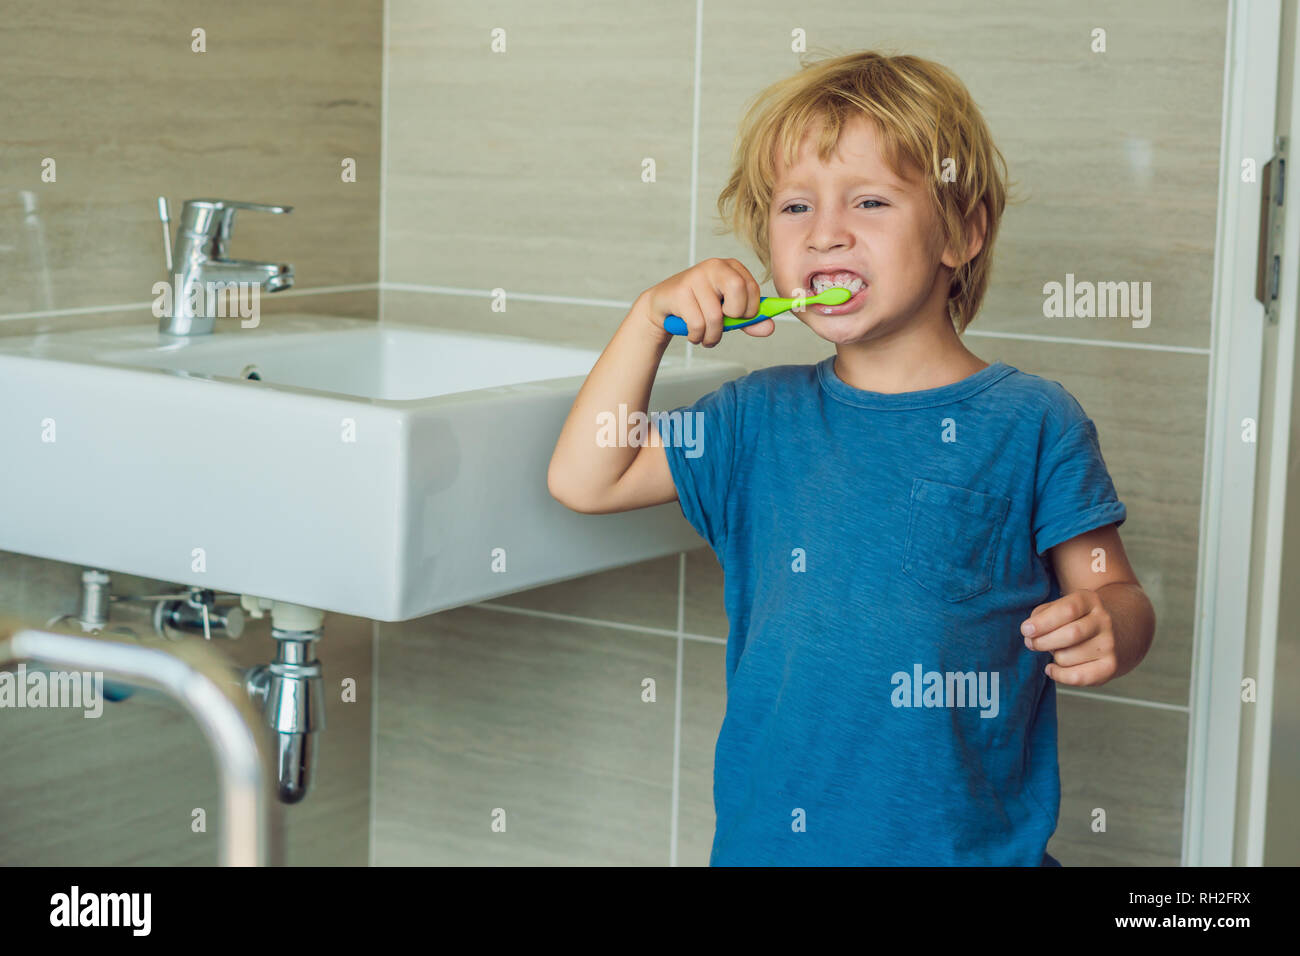 Kleine blonde Junge lernen seine Zähne putzen in der heimischen Badewanne.  Kinder lernen, gesund zu bleiben. Health Care Konzept Stockfotografie -  Alamy